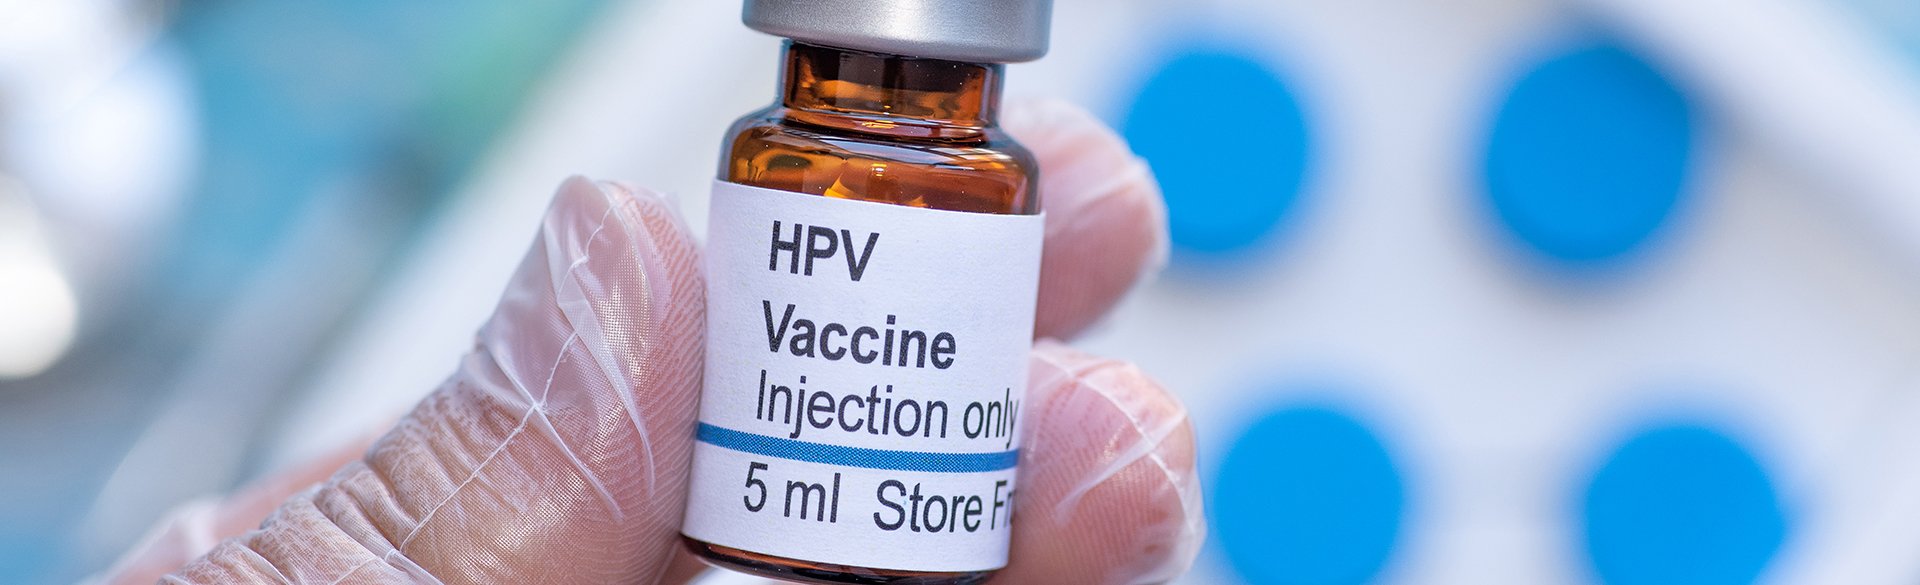 HPV vaccine hero